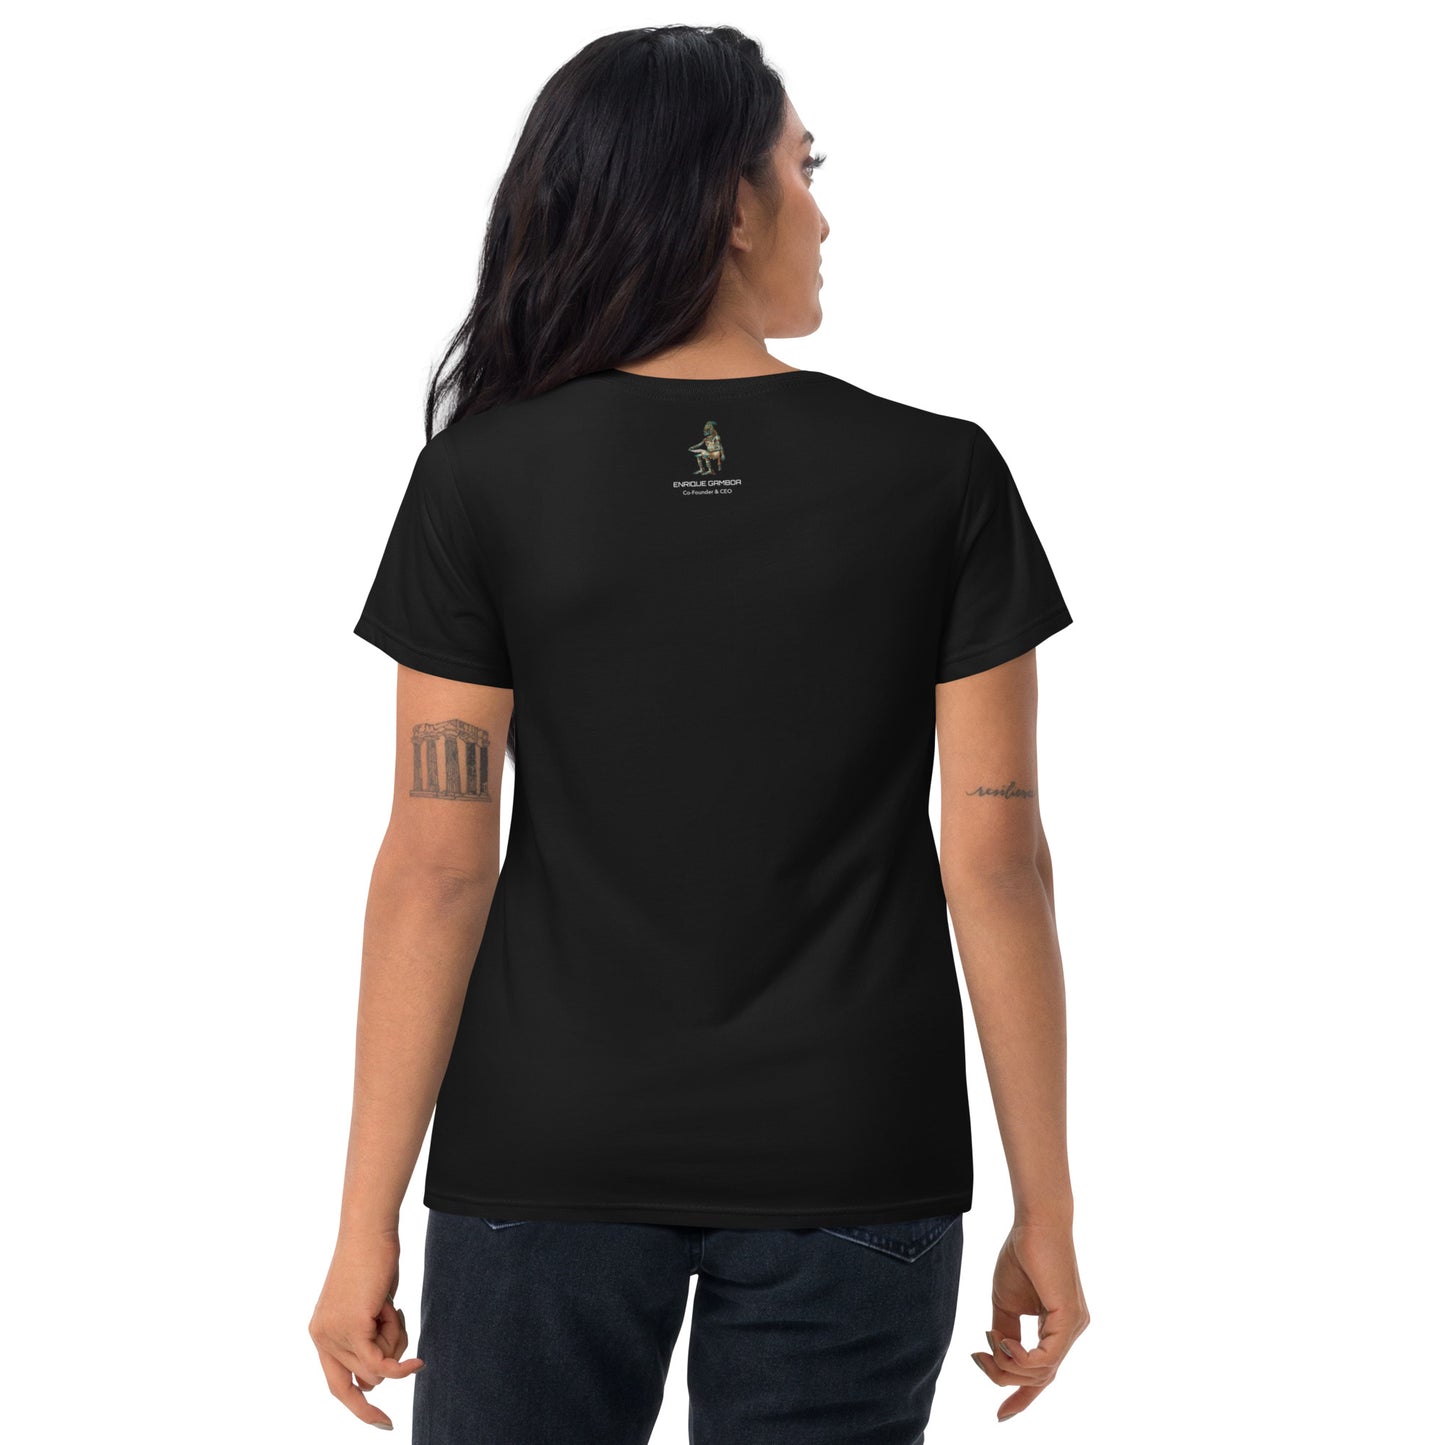 Metaverse Professional Innovator Shirt Women's short sleeve t-shirt